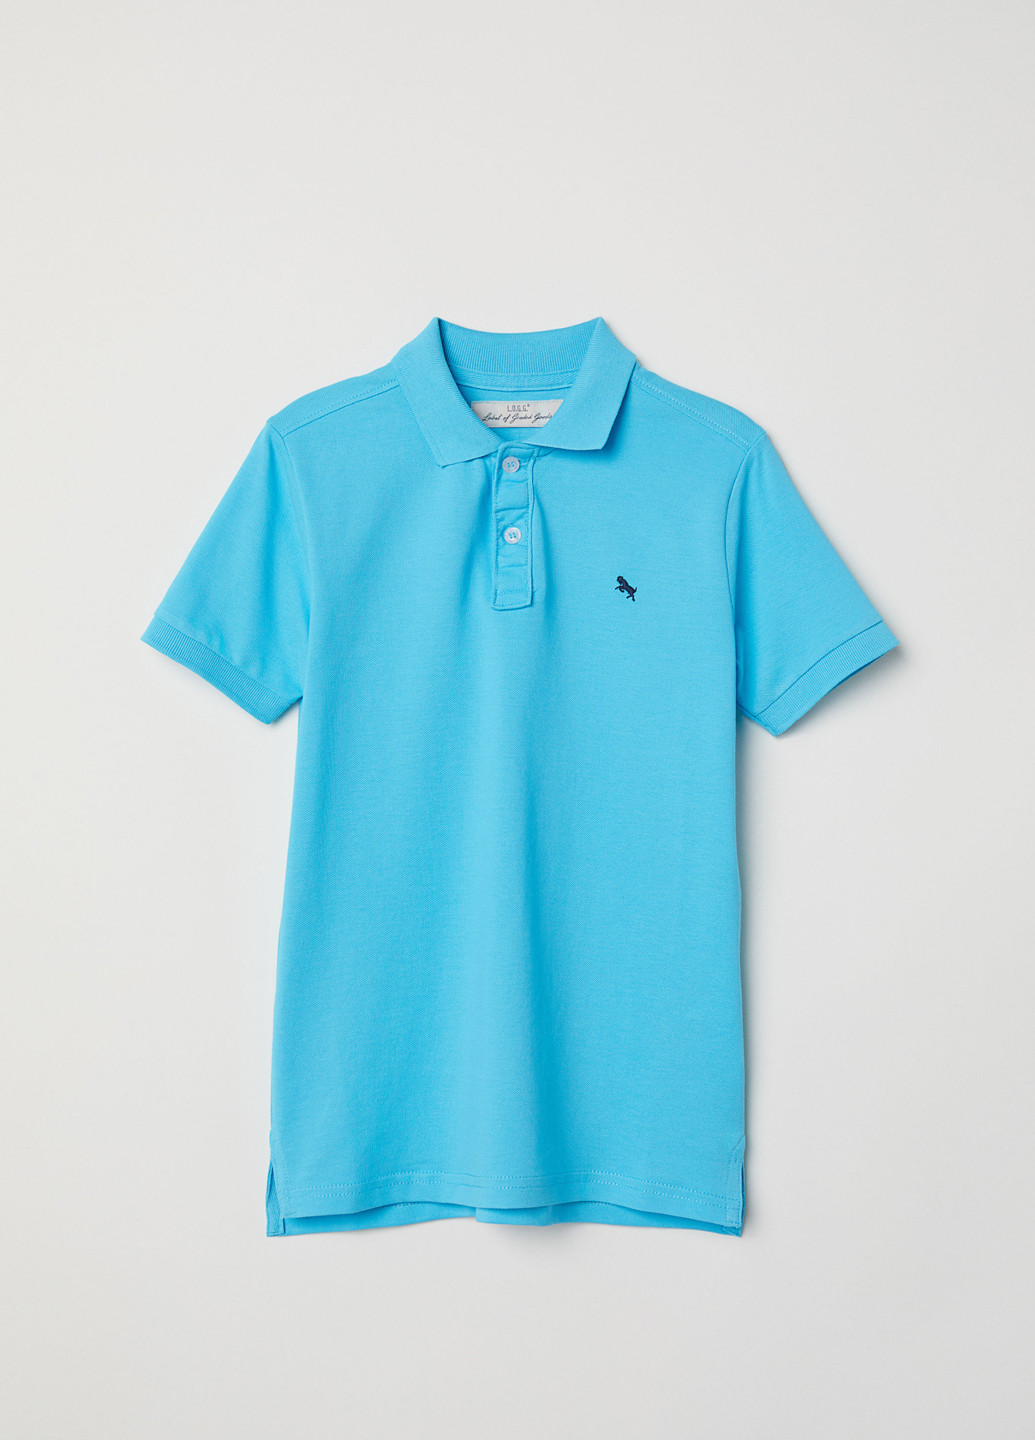 Голубой детская футболка-футболка для мальчика H&M